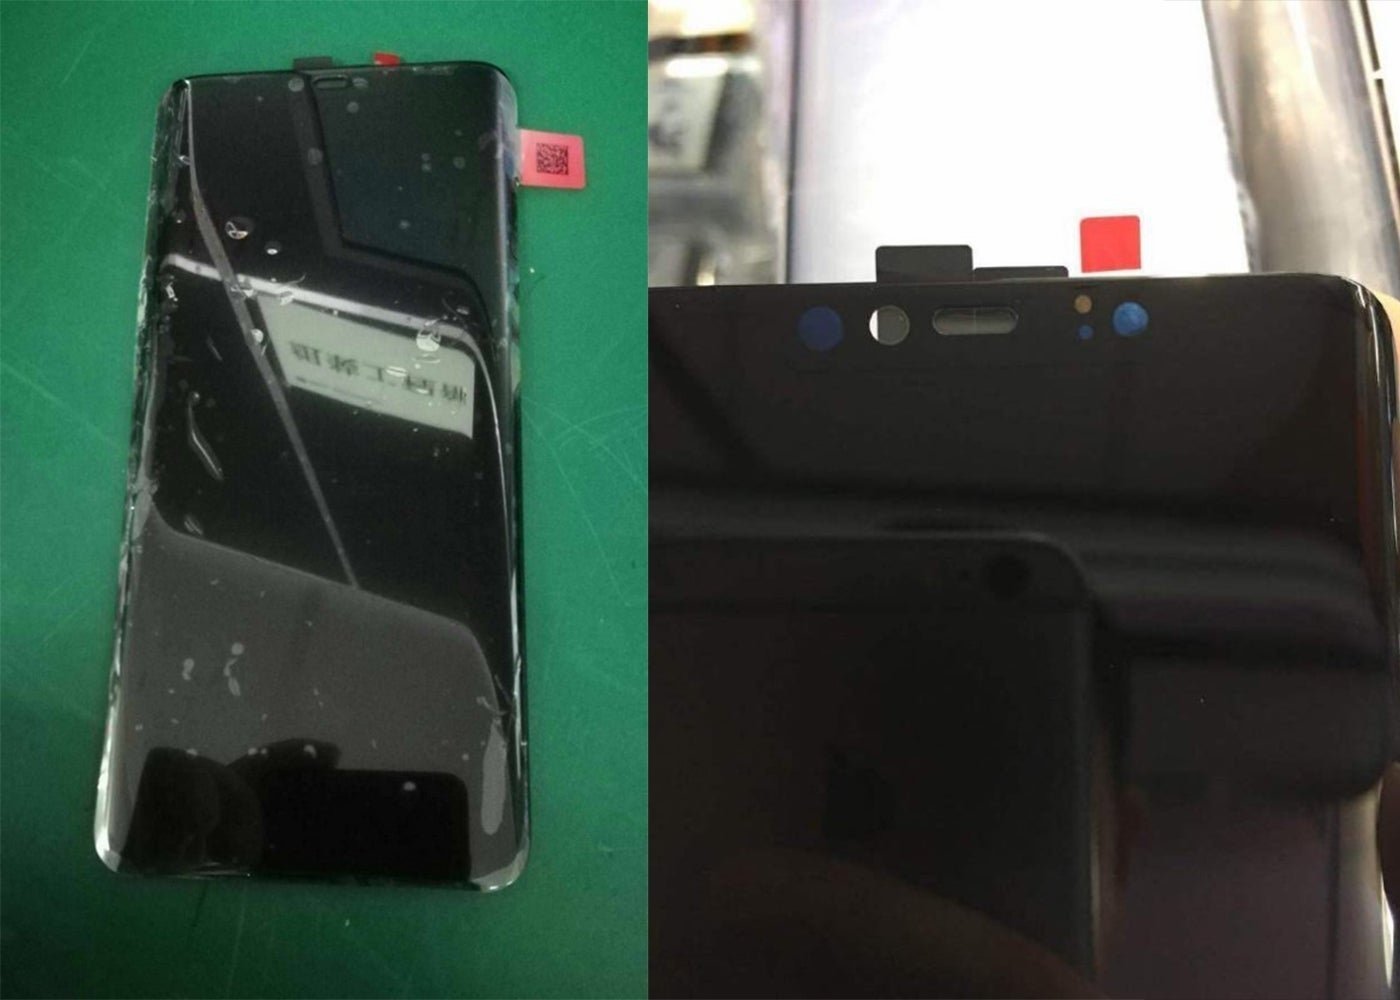 El panel frontal del Huawei Mate 20 confirma un notch y desbloqueo facial tipo Face ID